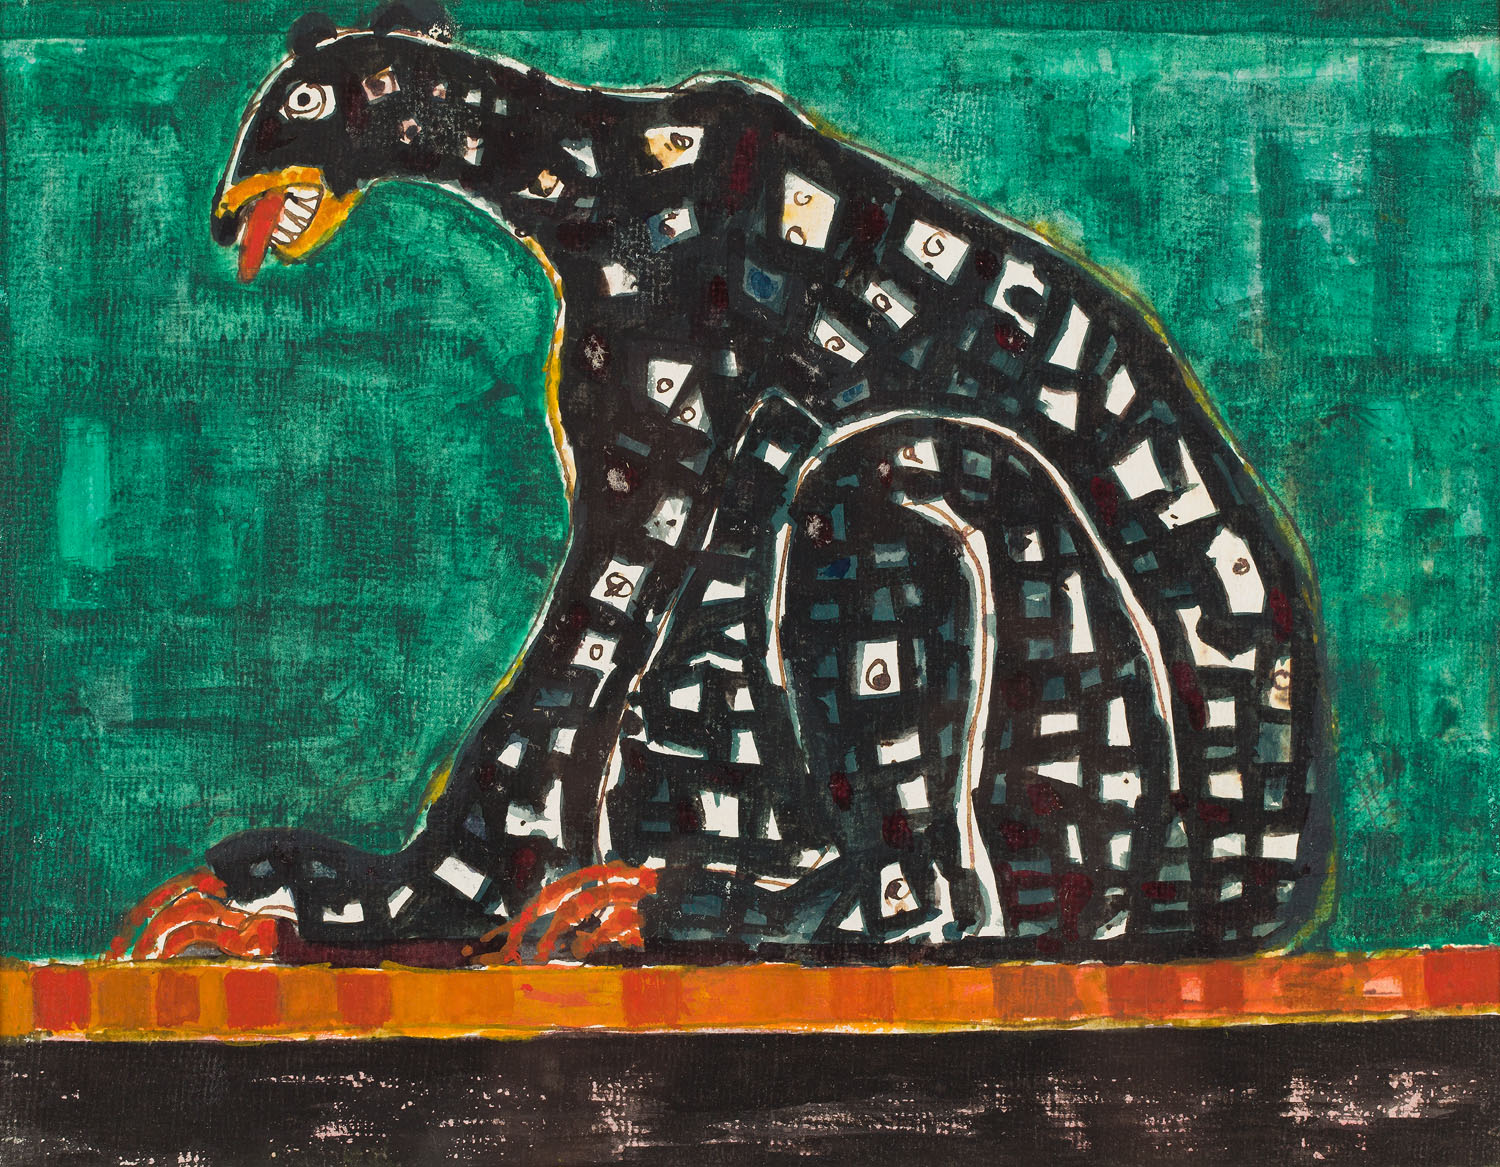 Akwarela przedstawiająca duże, czarne zwierzę fantastyczne w pozycji siedzącej, na intensywnie zielonym tle. Czarne futro urozmaicone jaśniejszymi partiami przypominającymi mozaikę. Paszcza zwierzęcia na wpół otwarta – widoczne zęby i język. Długie pazury opierają się na pomarańczowym wykończeniu muru, na którym siedzi.